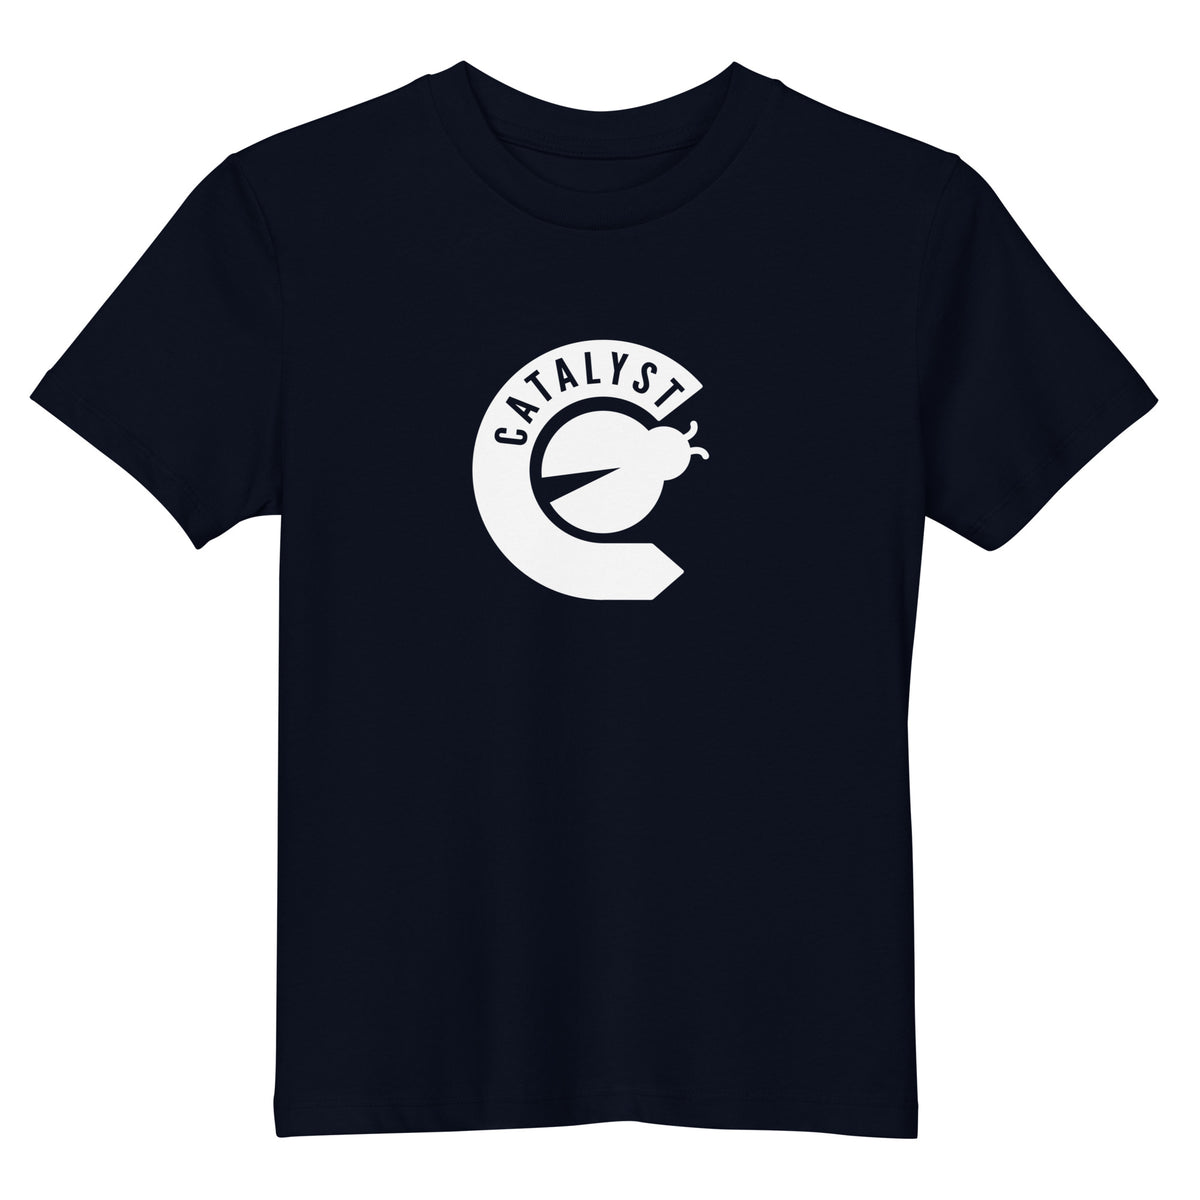 Catalyst Critters Team T-Shirt